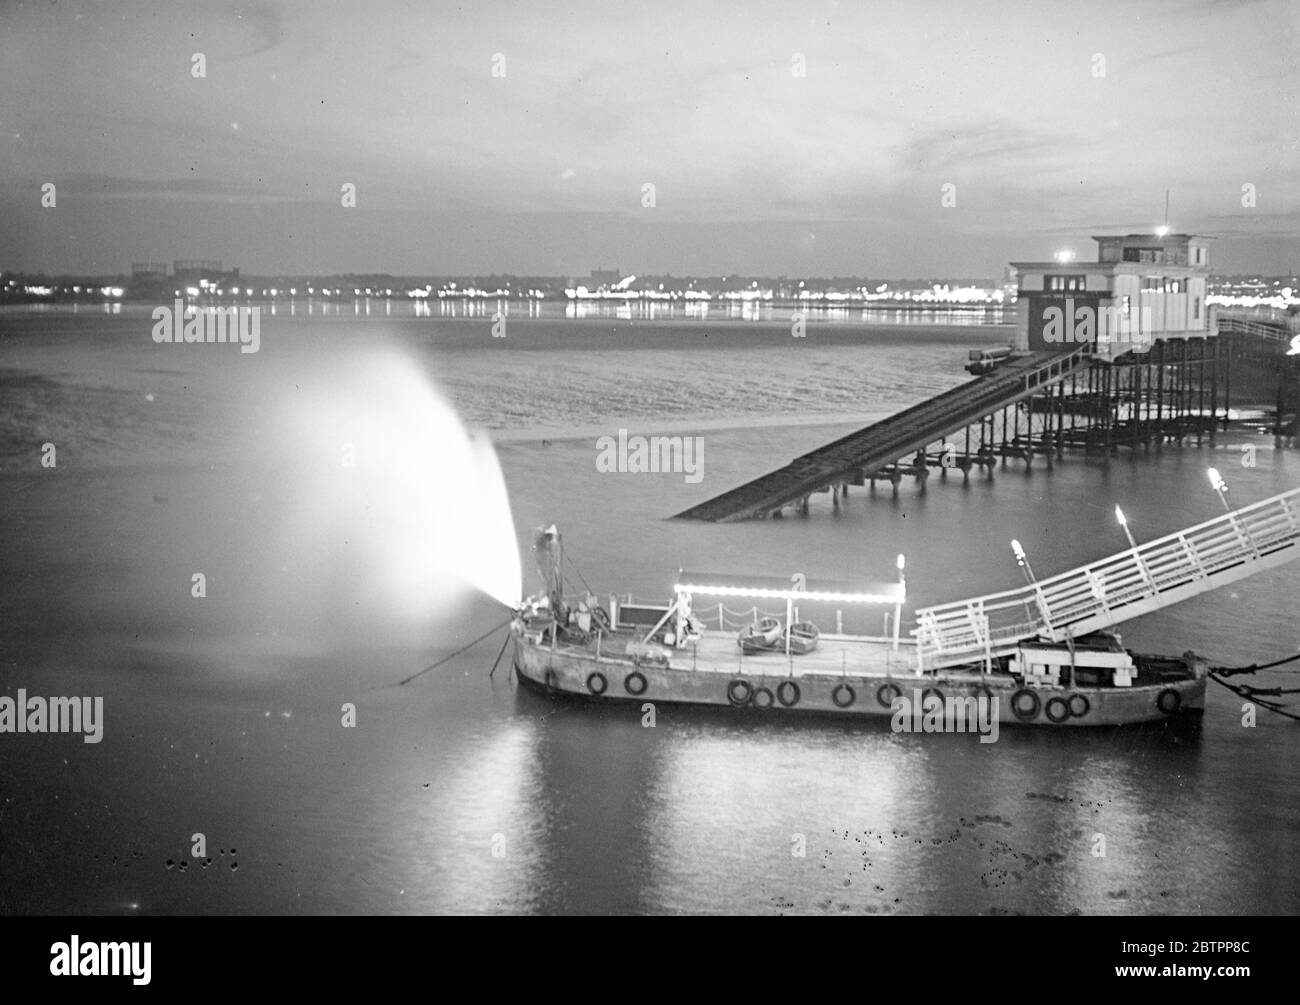 Le spectacle de lumière de Southend. Un ponton « en feu » à Southend Pierhead dans le cadre des illuminations spectaculaires de Southend, qui sont actuellement en service. Derrière le ponton se trouve le bateau de sauvetage et au loin, les lumières scintillantes du front de mer du 1er août 1938 Banque D'Images